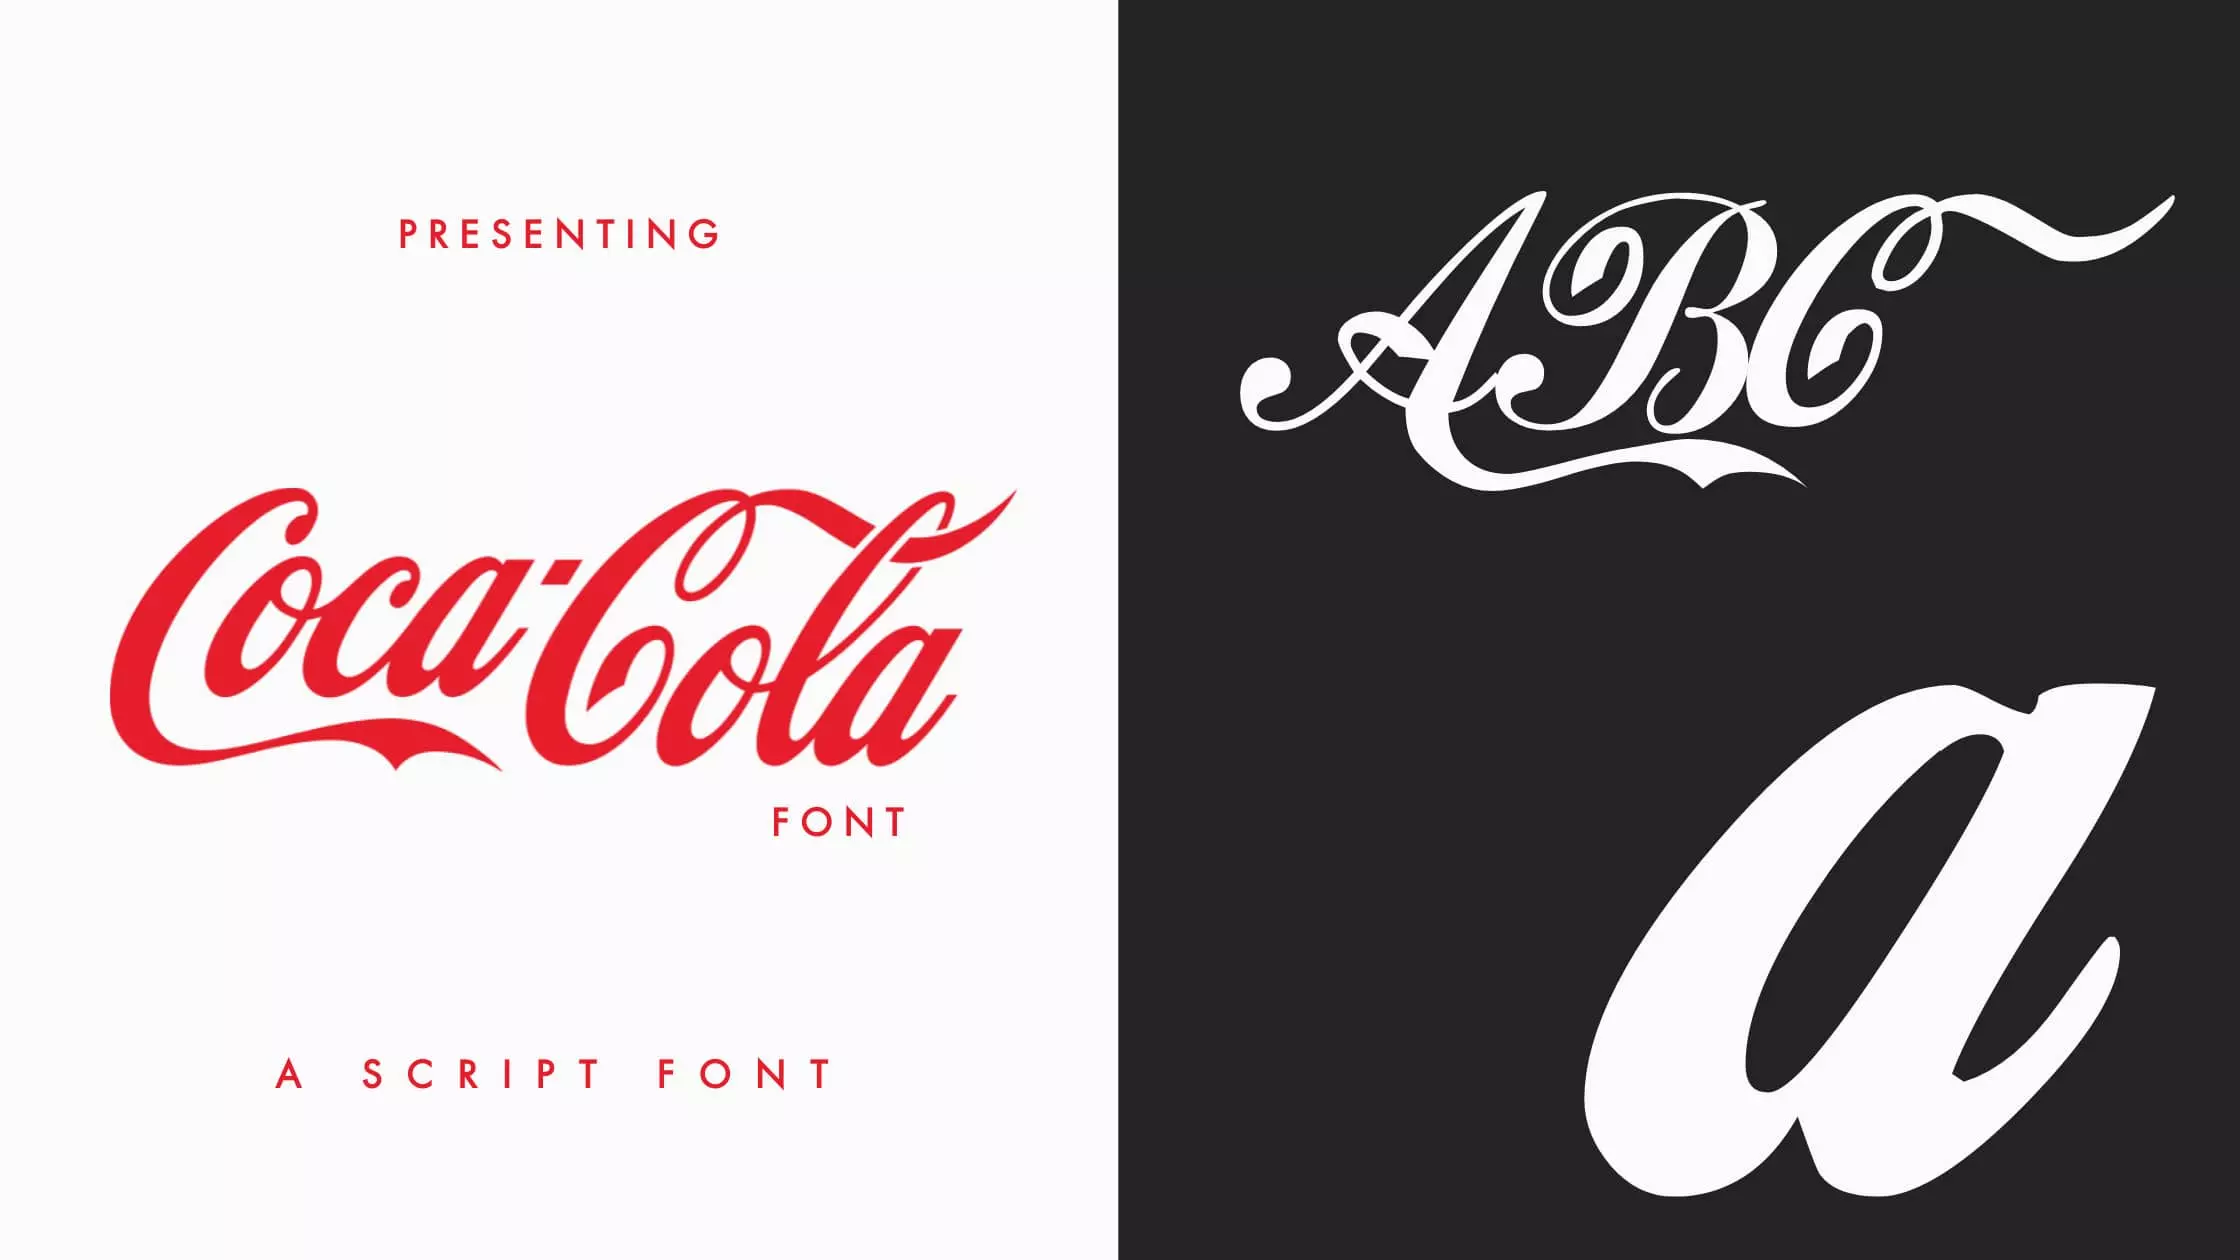 Coca-Cola font Free Download